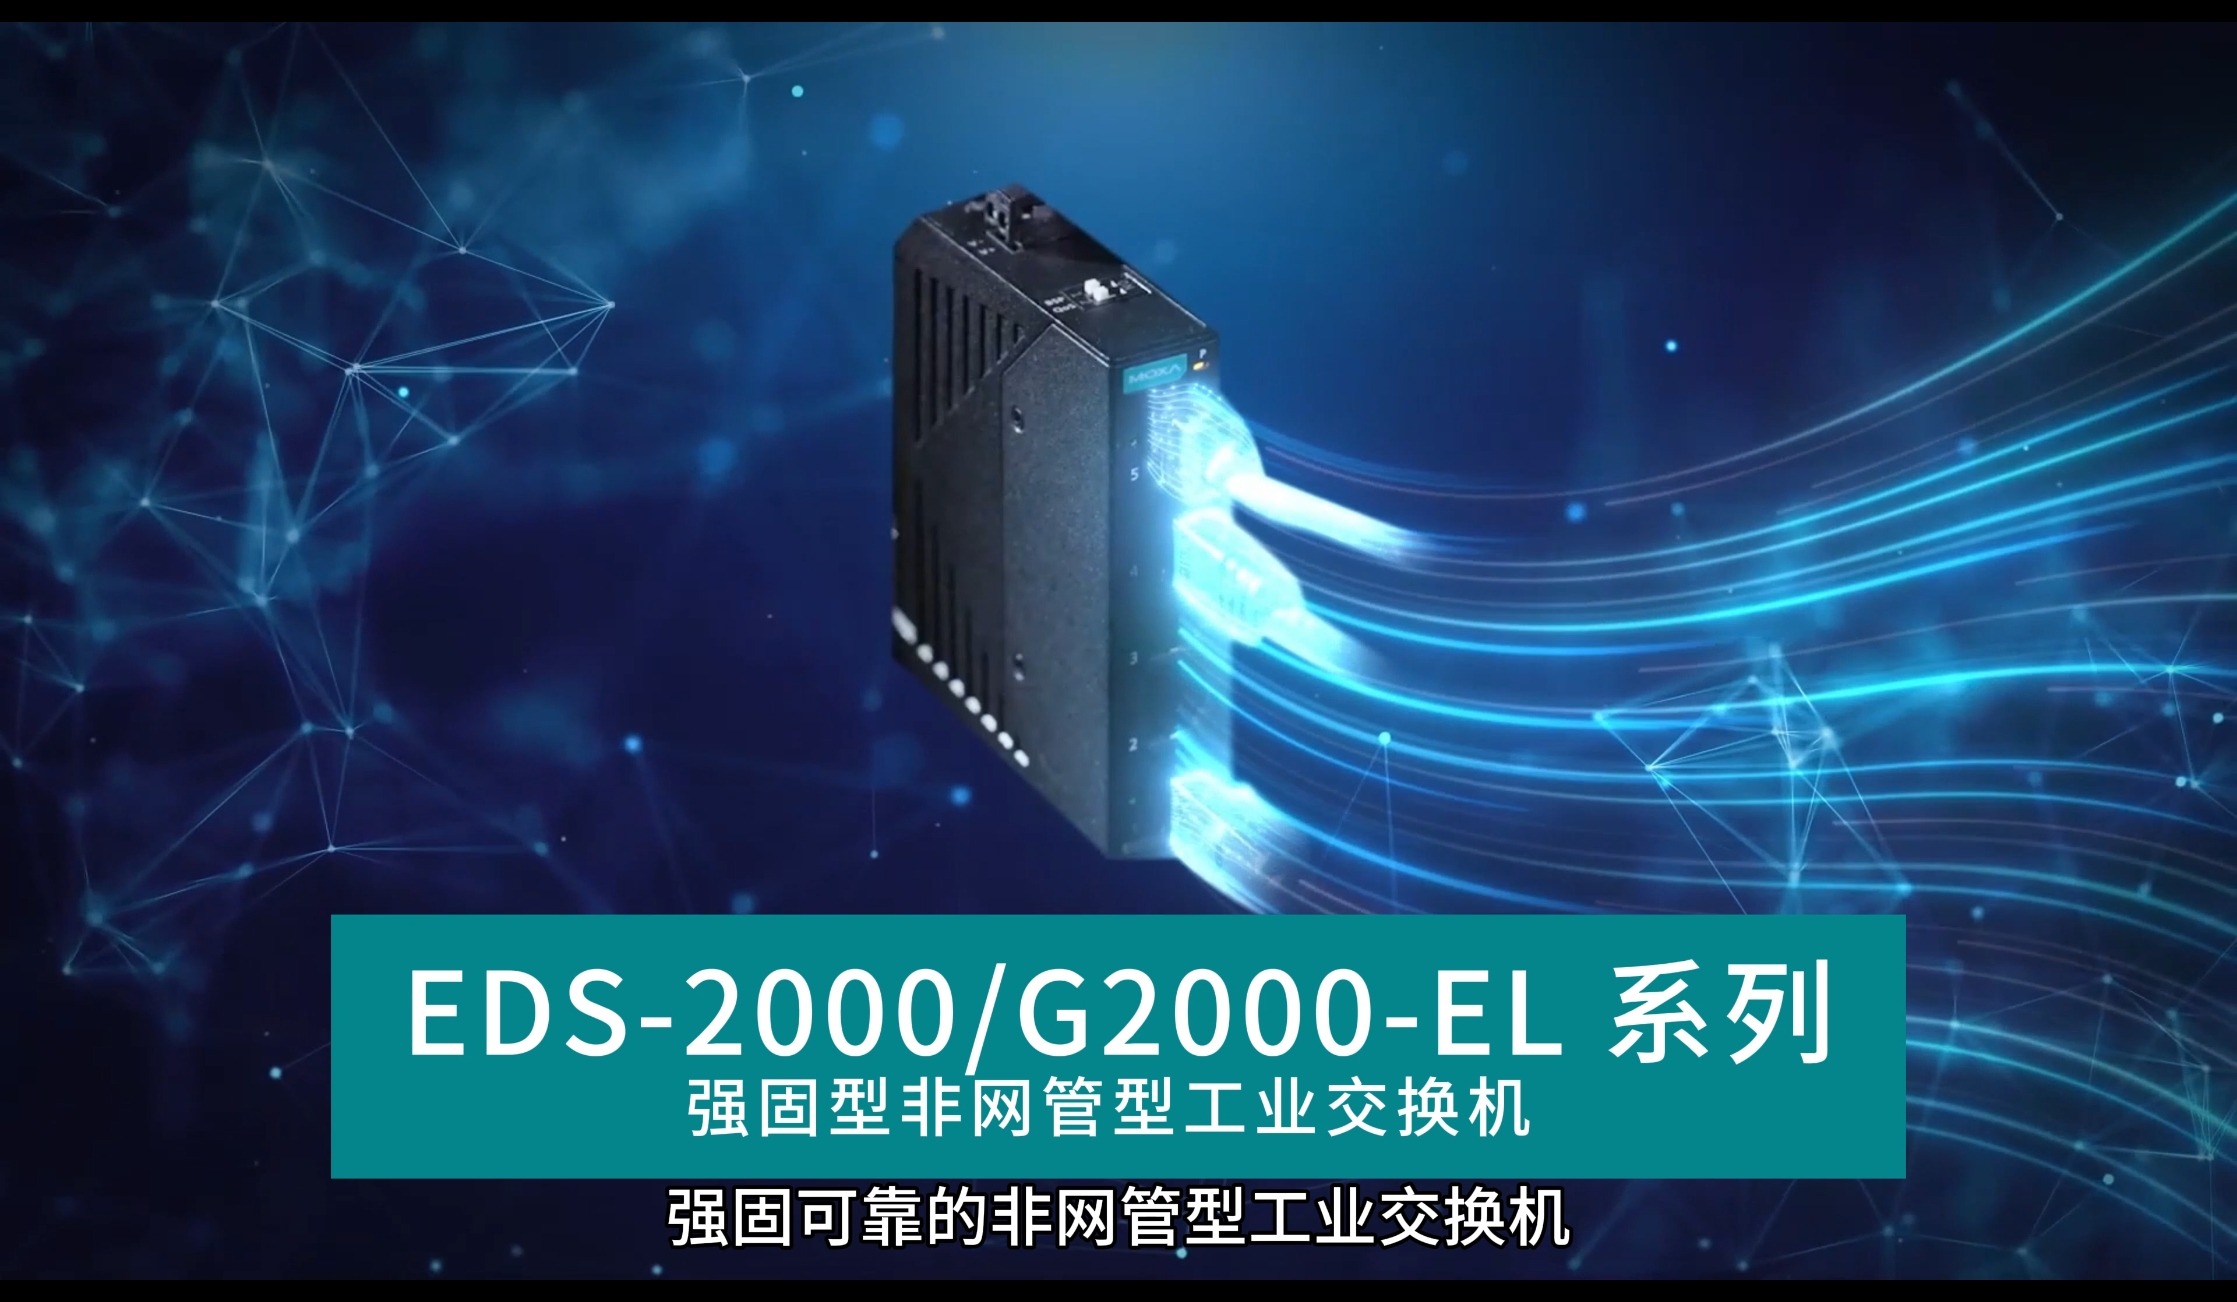 使用 EDS-2000G2000-EL 系列非网管型交换机可靠地连接工业应用